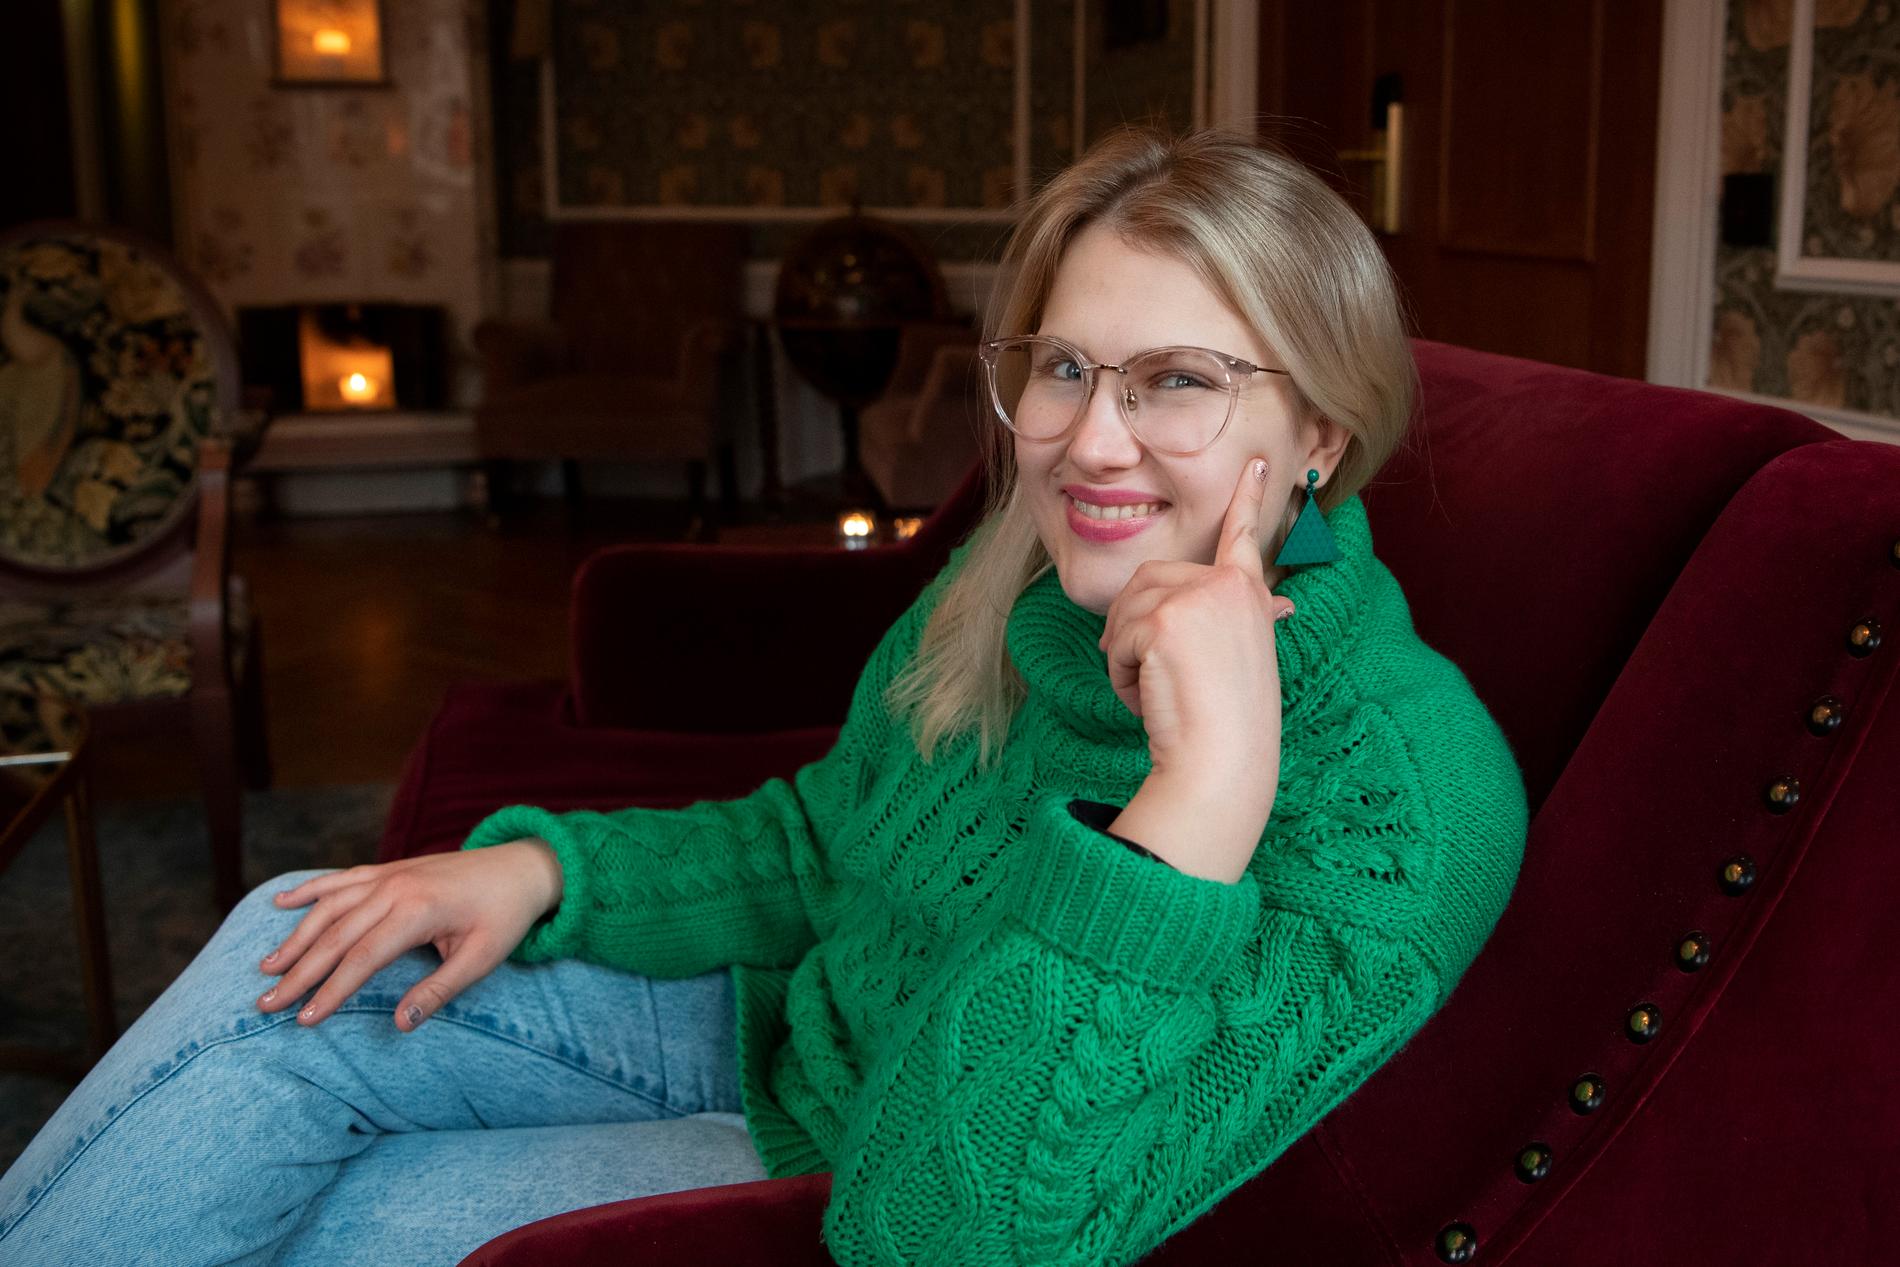 "I dag mår jag bra och är stark. Att få vara med i filmen var en stor dröm för mig", säger Emma Örtlund.